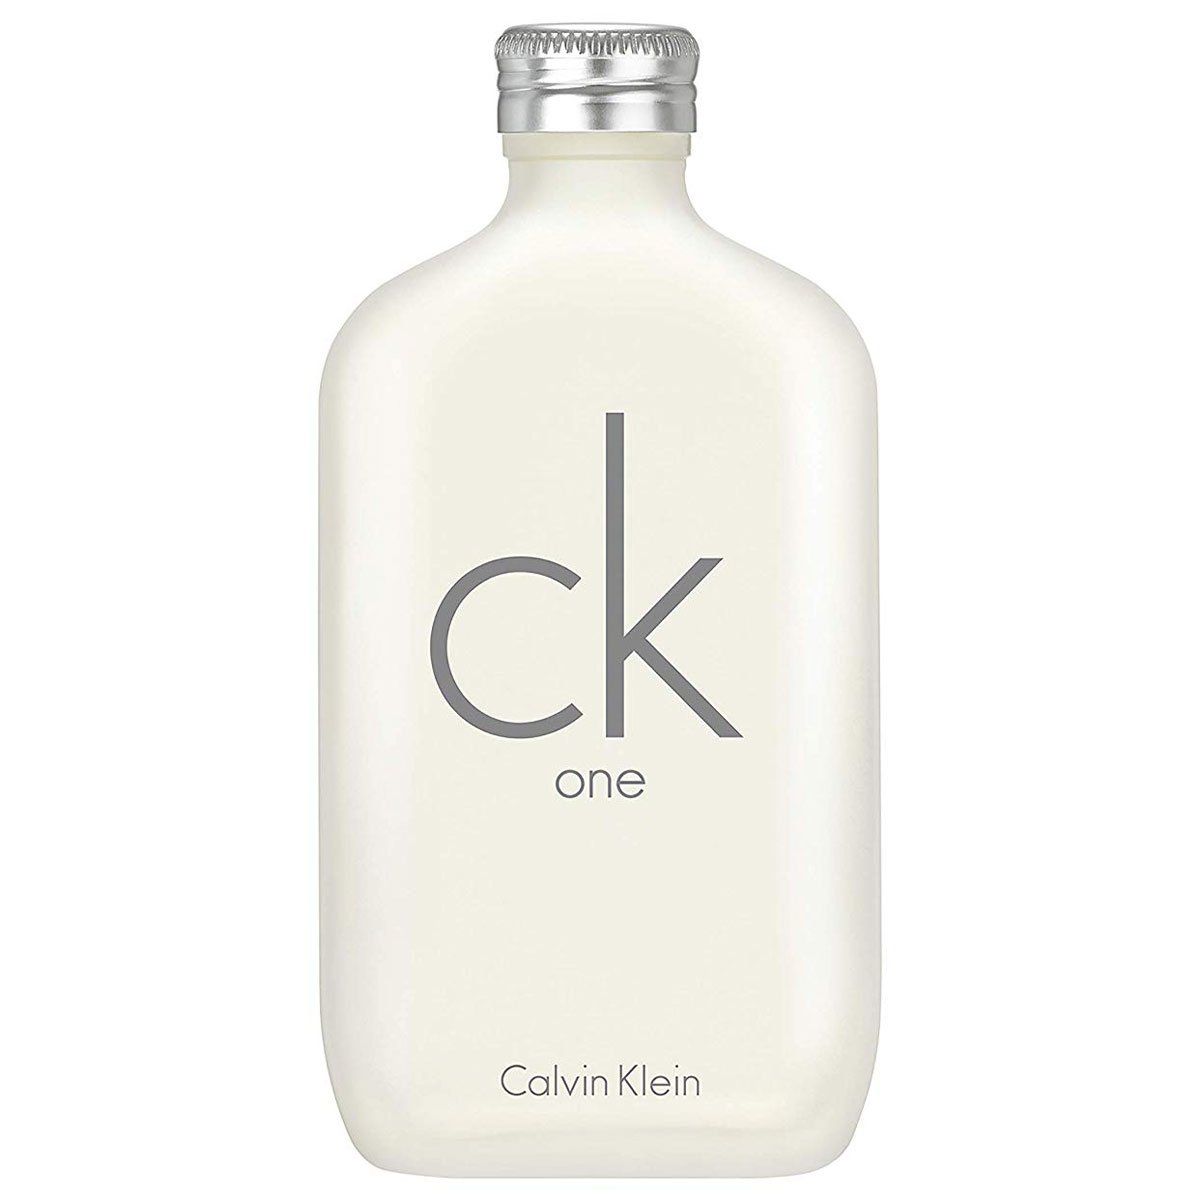 Descubrir 39+ imagen calvin klein ck perfume